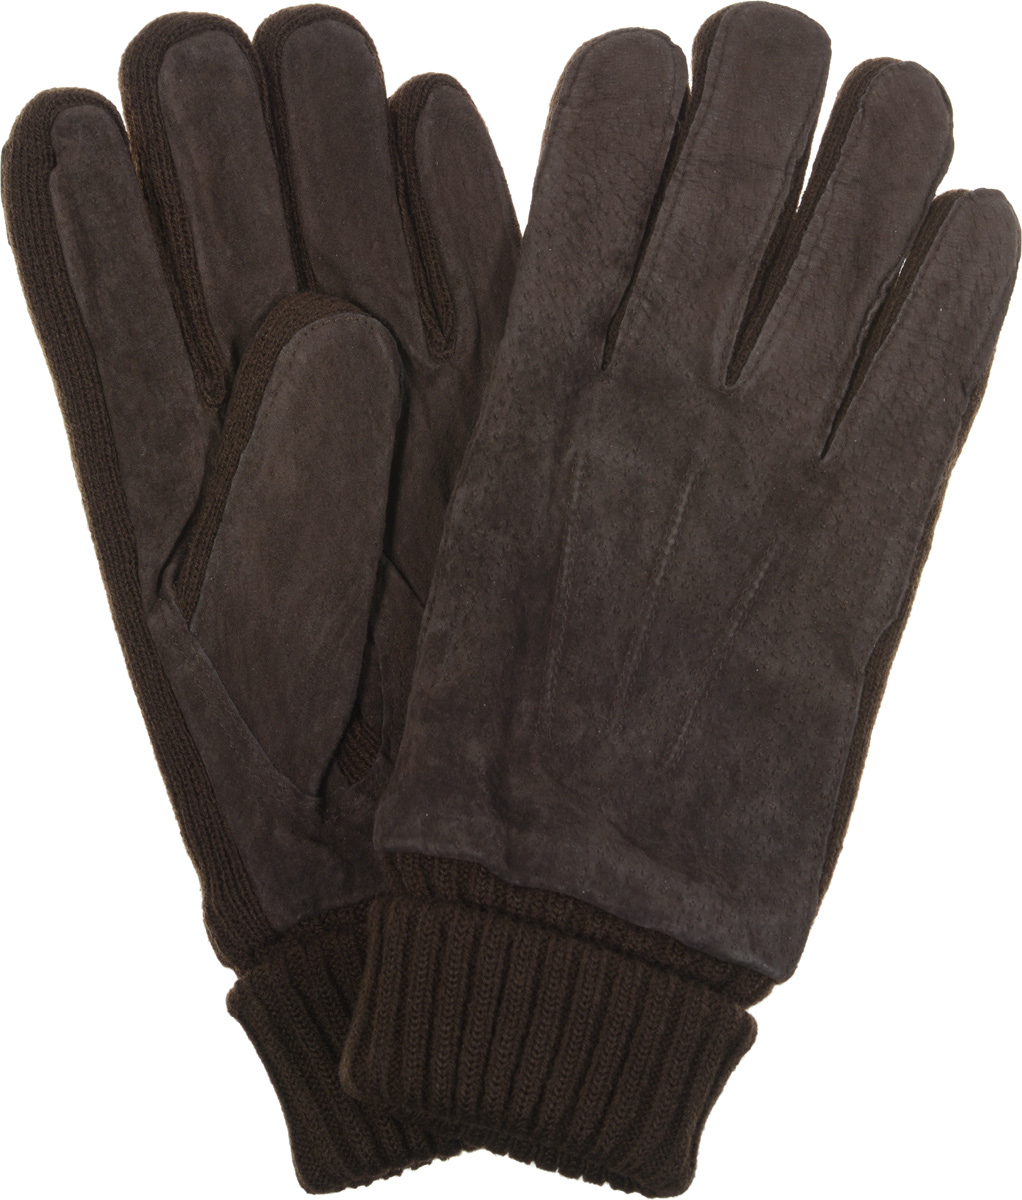 Перчатки мужские Modo Gru, цвет: коричневый. MKH 04.62. Размер S (6,5)